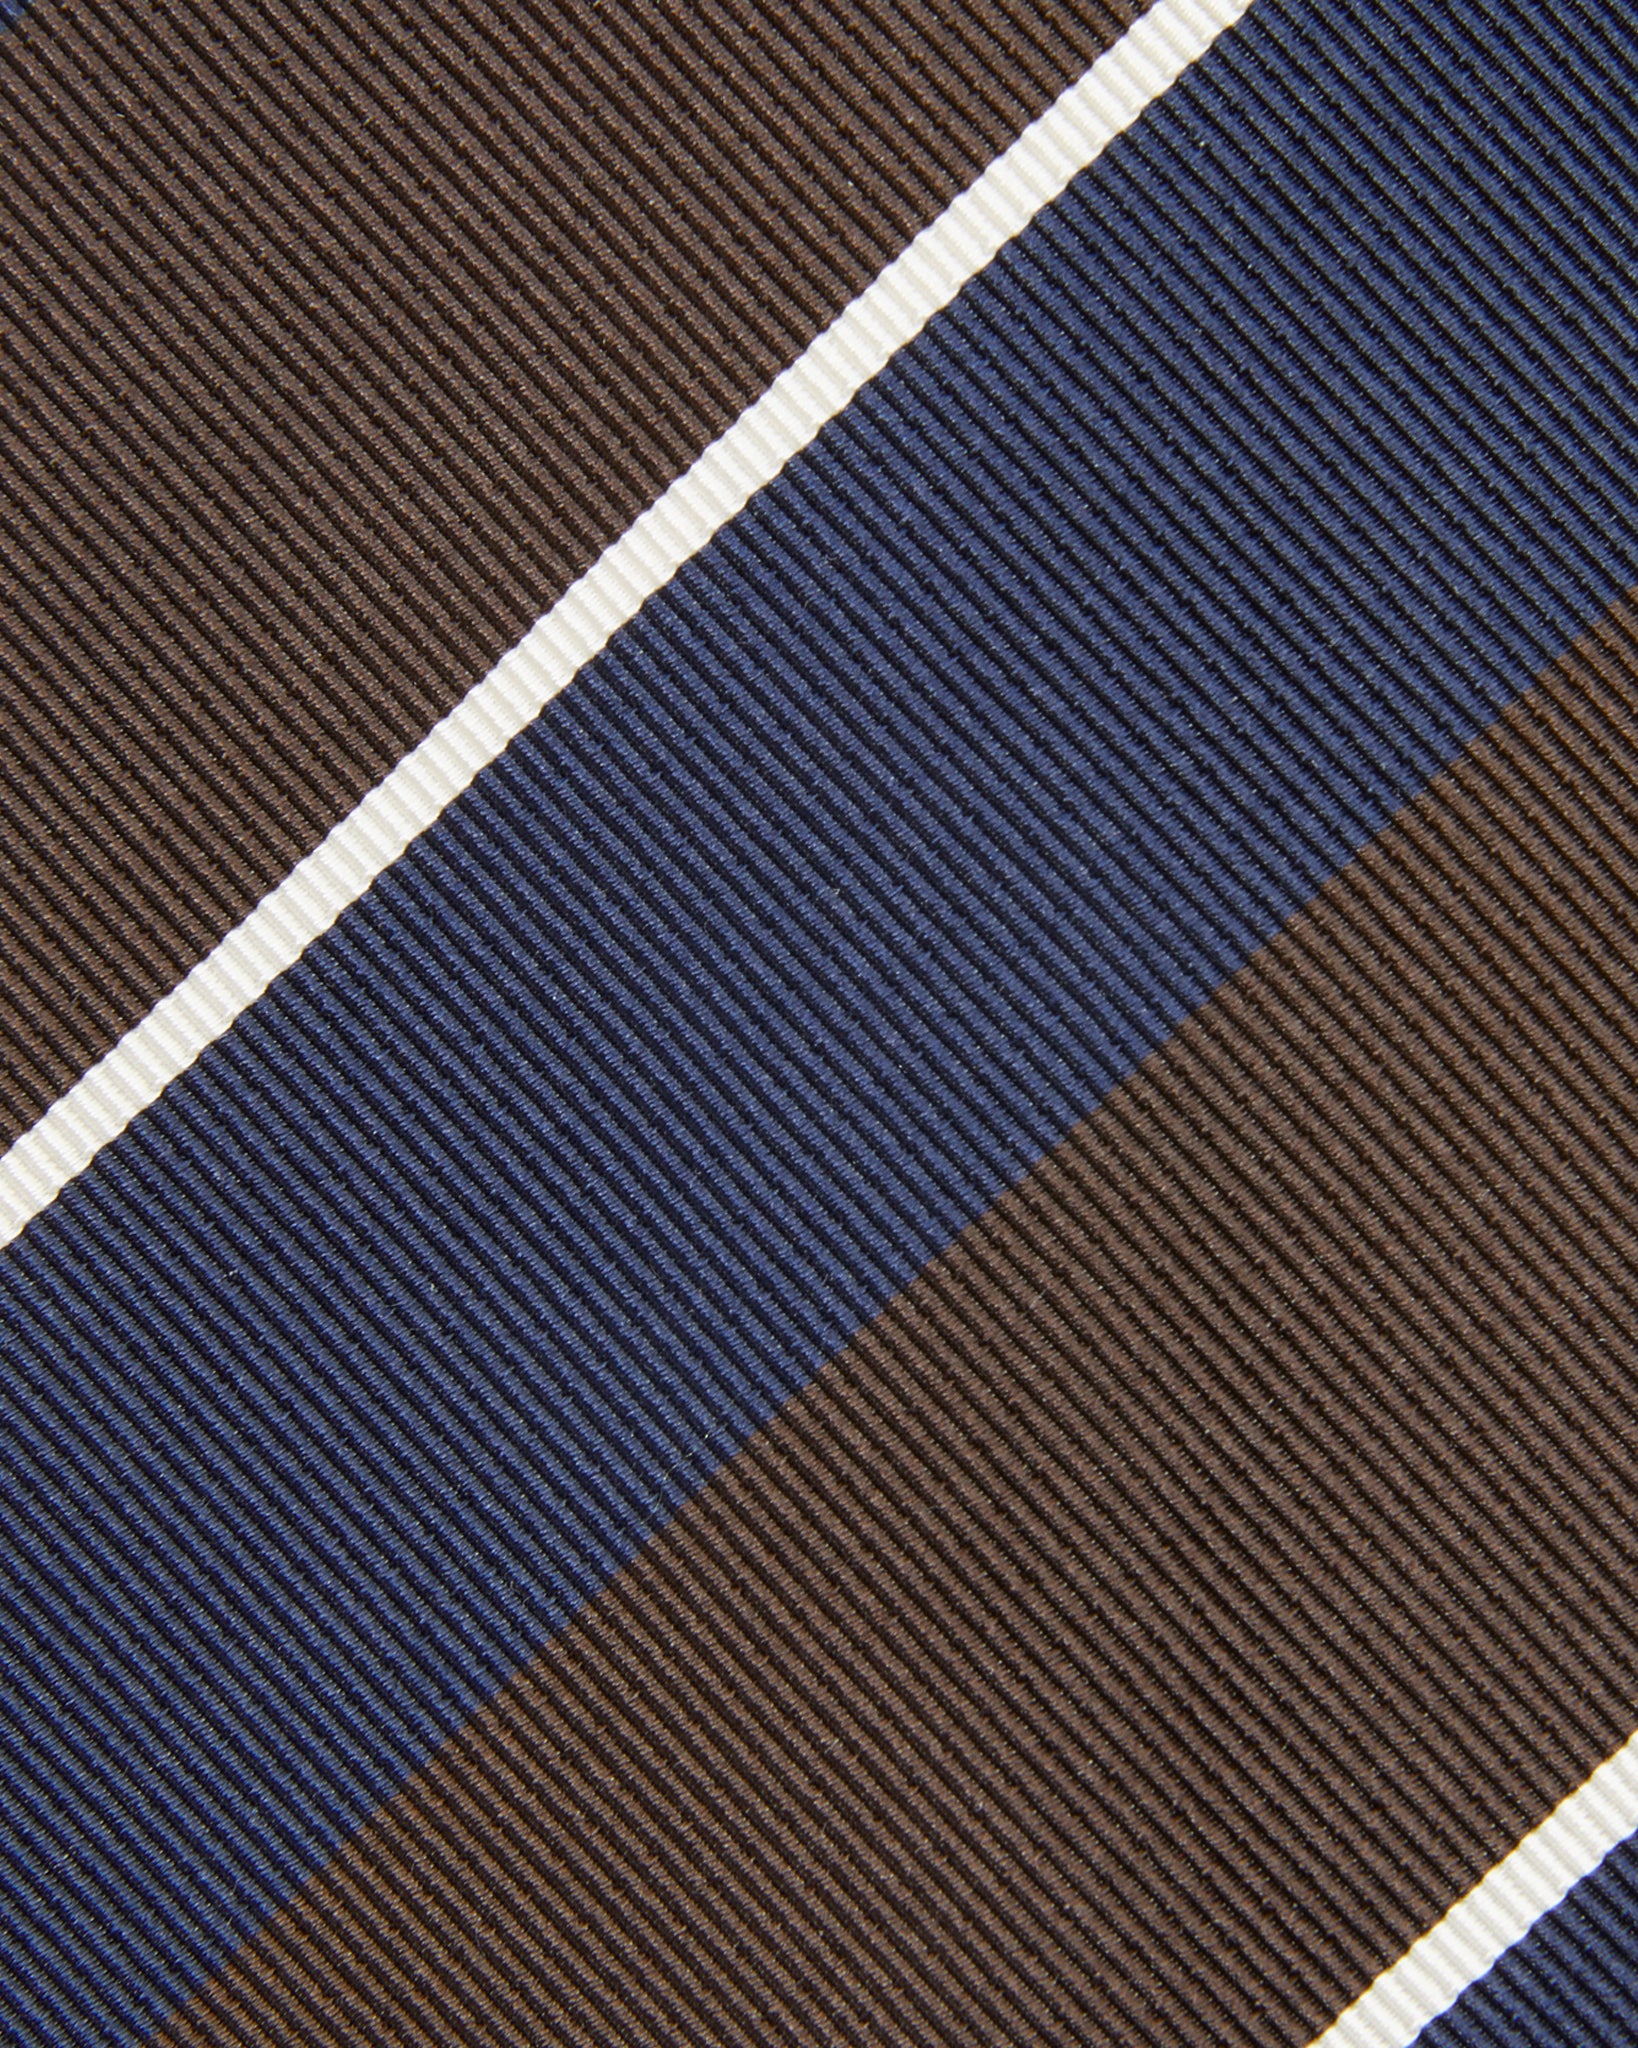 Silk Woven Tie in Navy/Forest/White Stripe